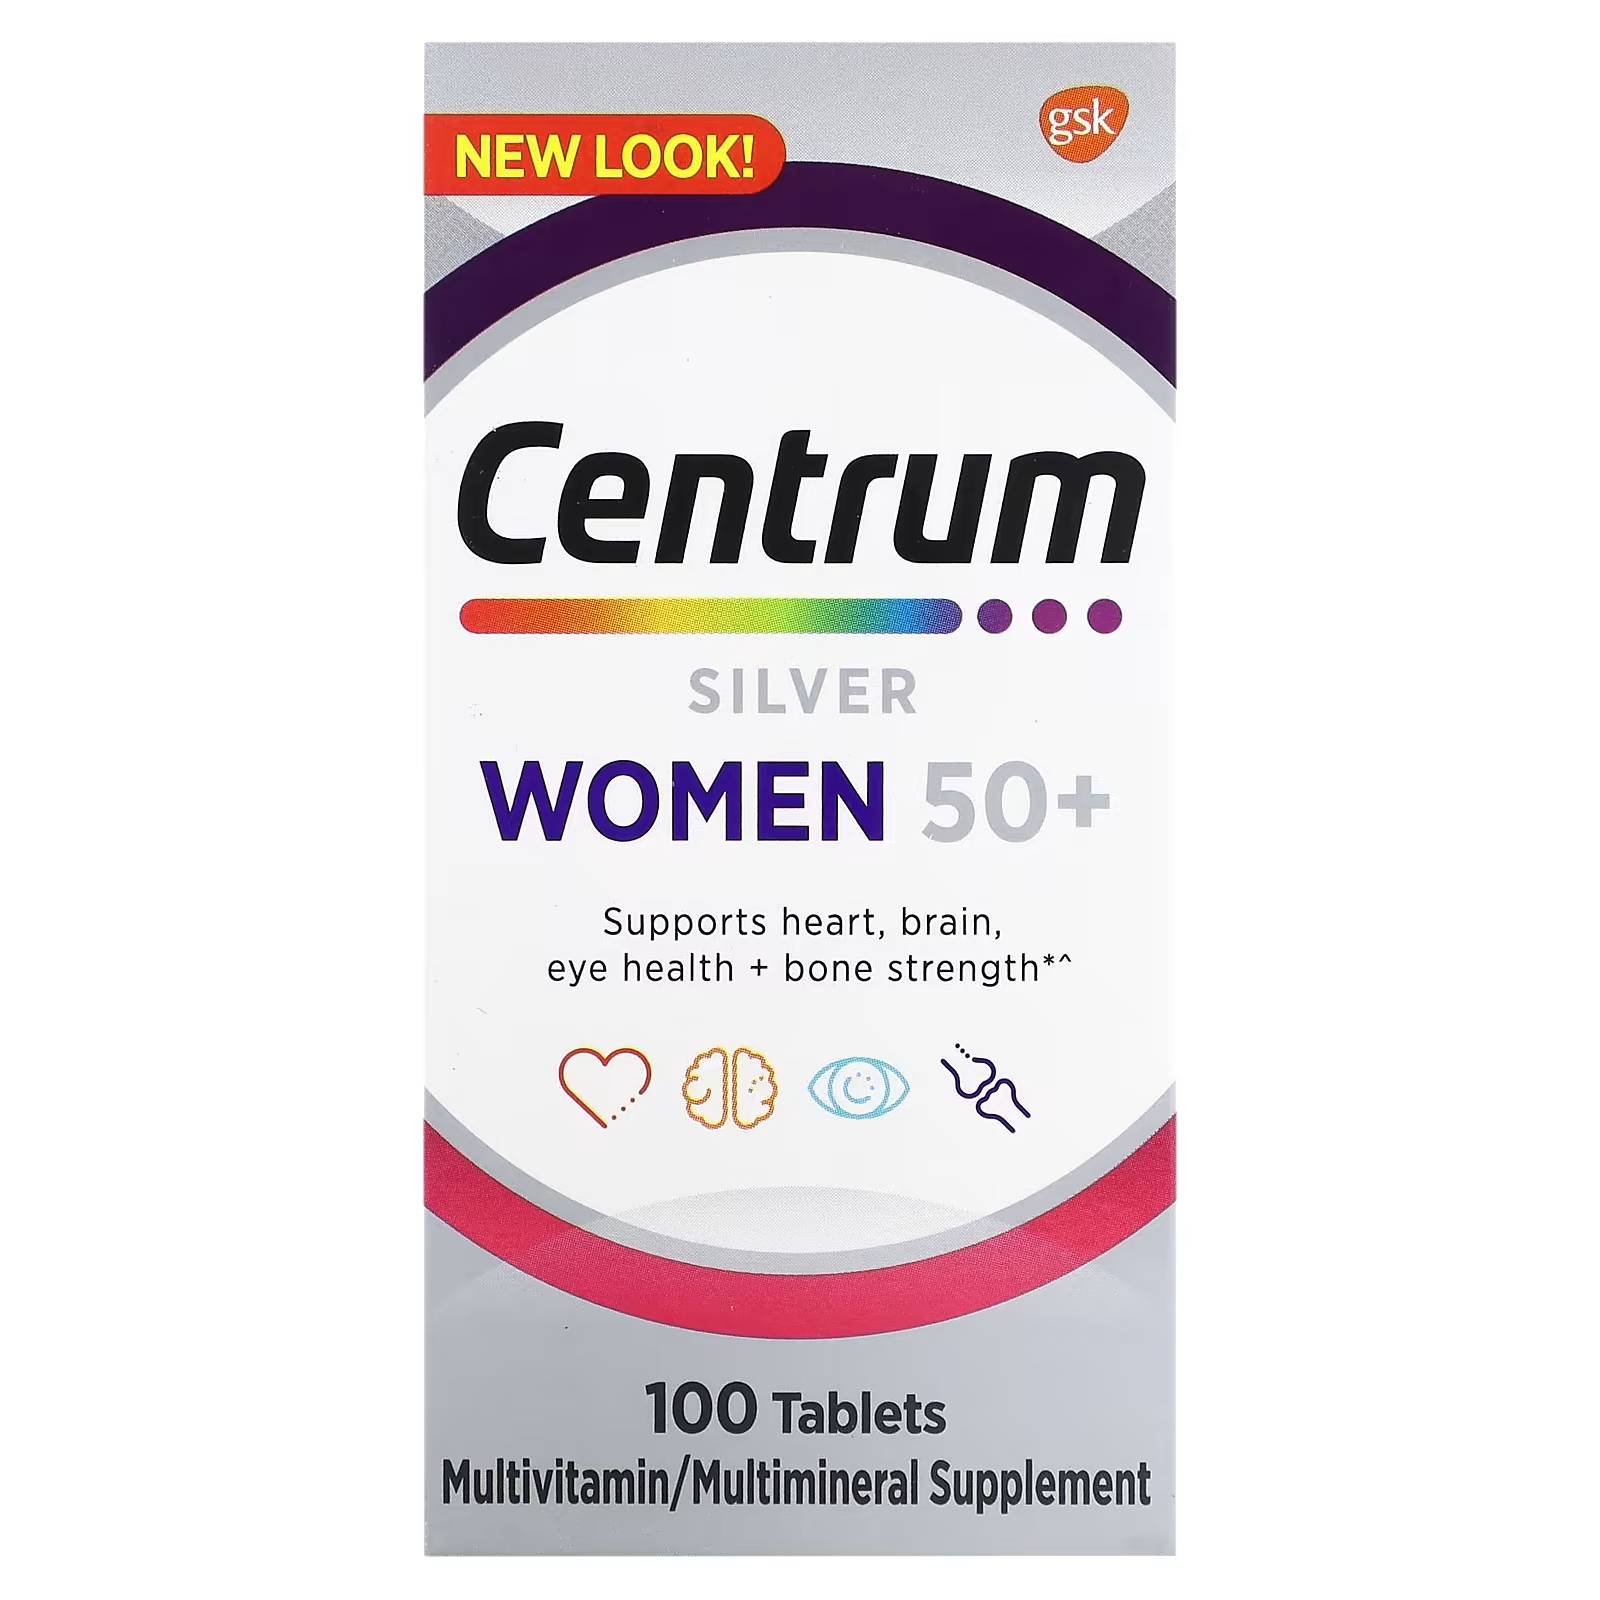 Мультивитаминная добавка Centrum Silver для женщин 50+, 100 таблеток